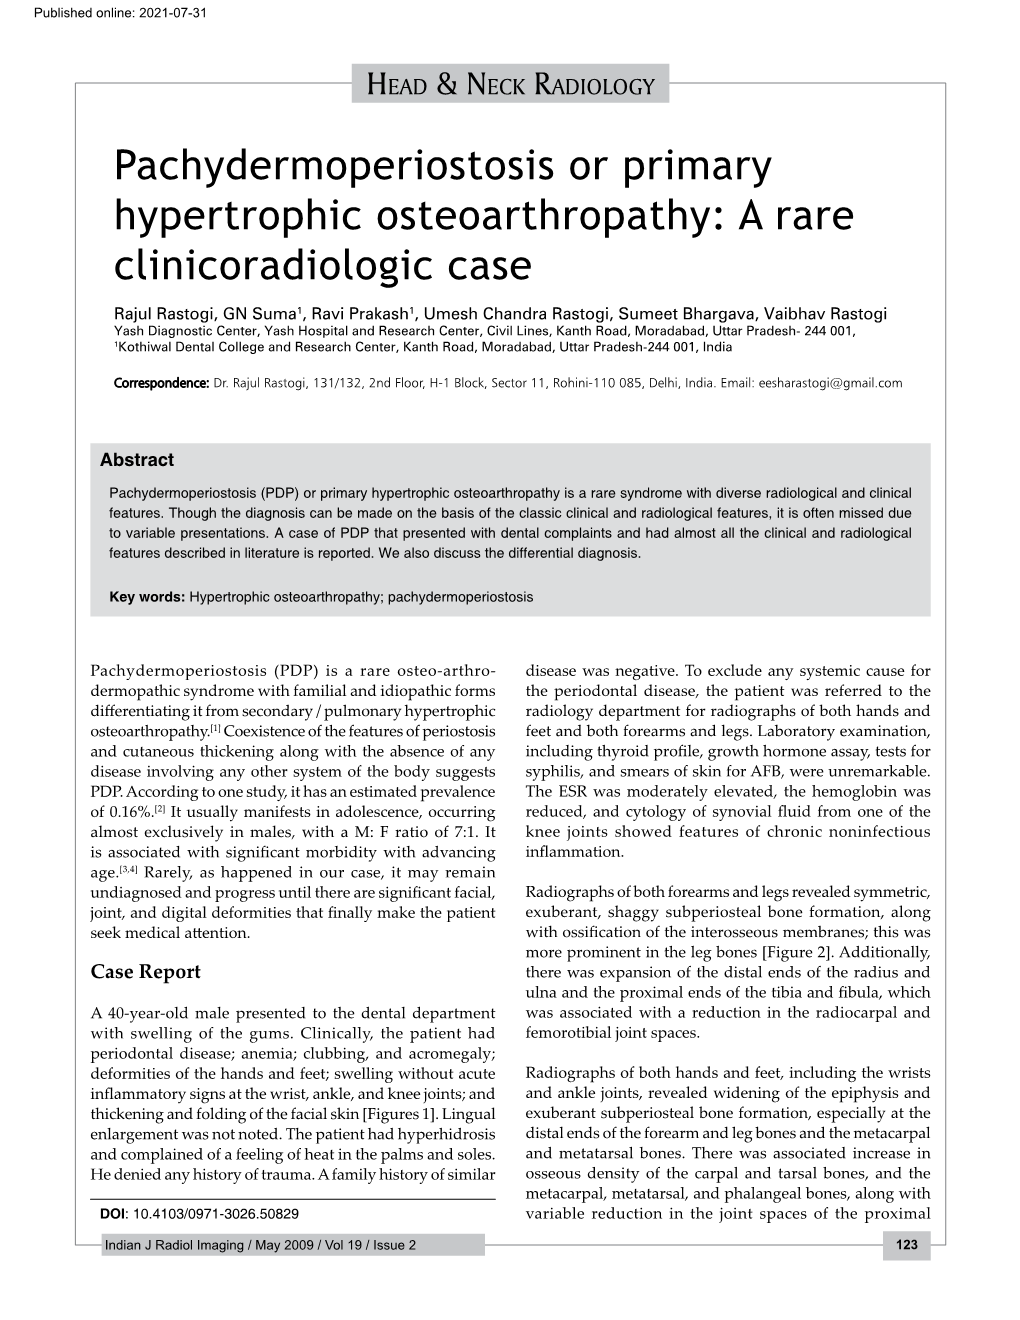 Pachydermoperiostosis Or Primary